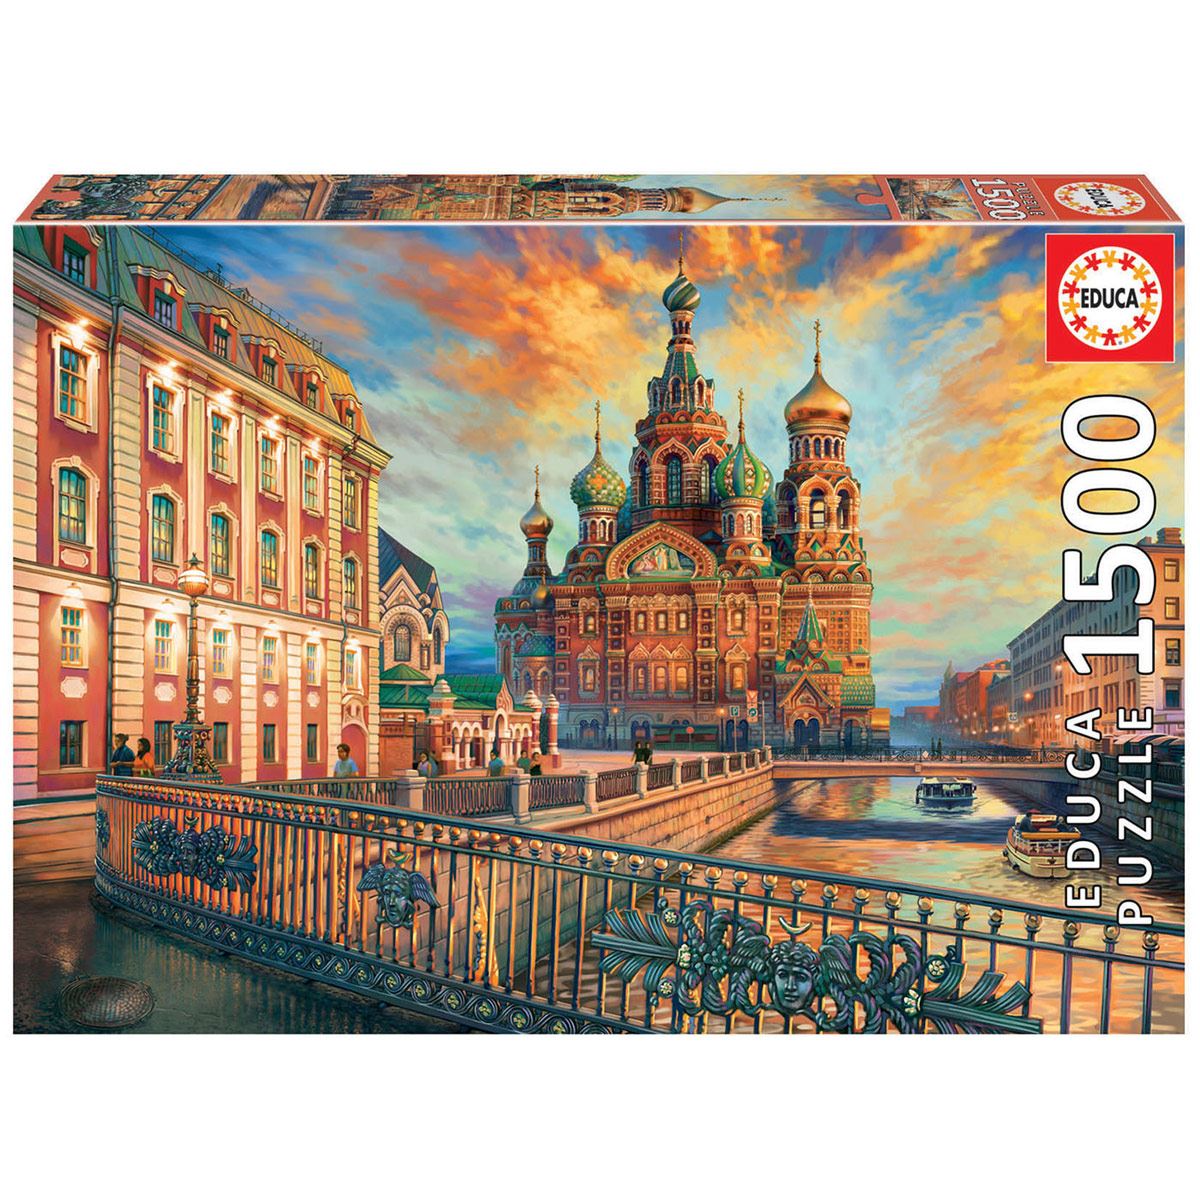 ponerse en cuclillas Estación de ferrocarril Arthur Conan Doyle Rompecabezas 1500 piezas San Petersburgo